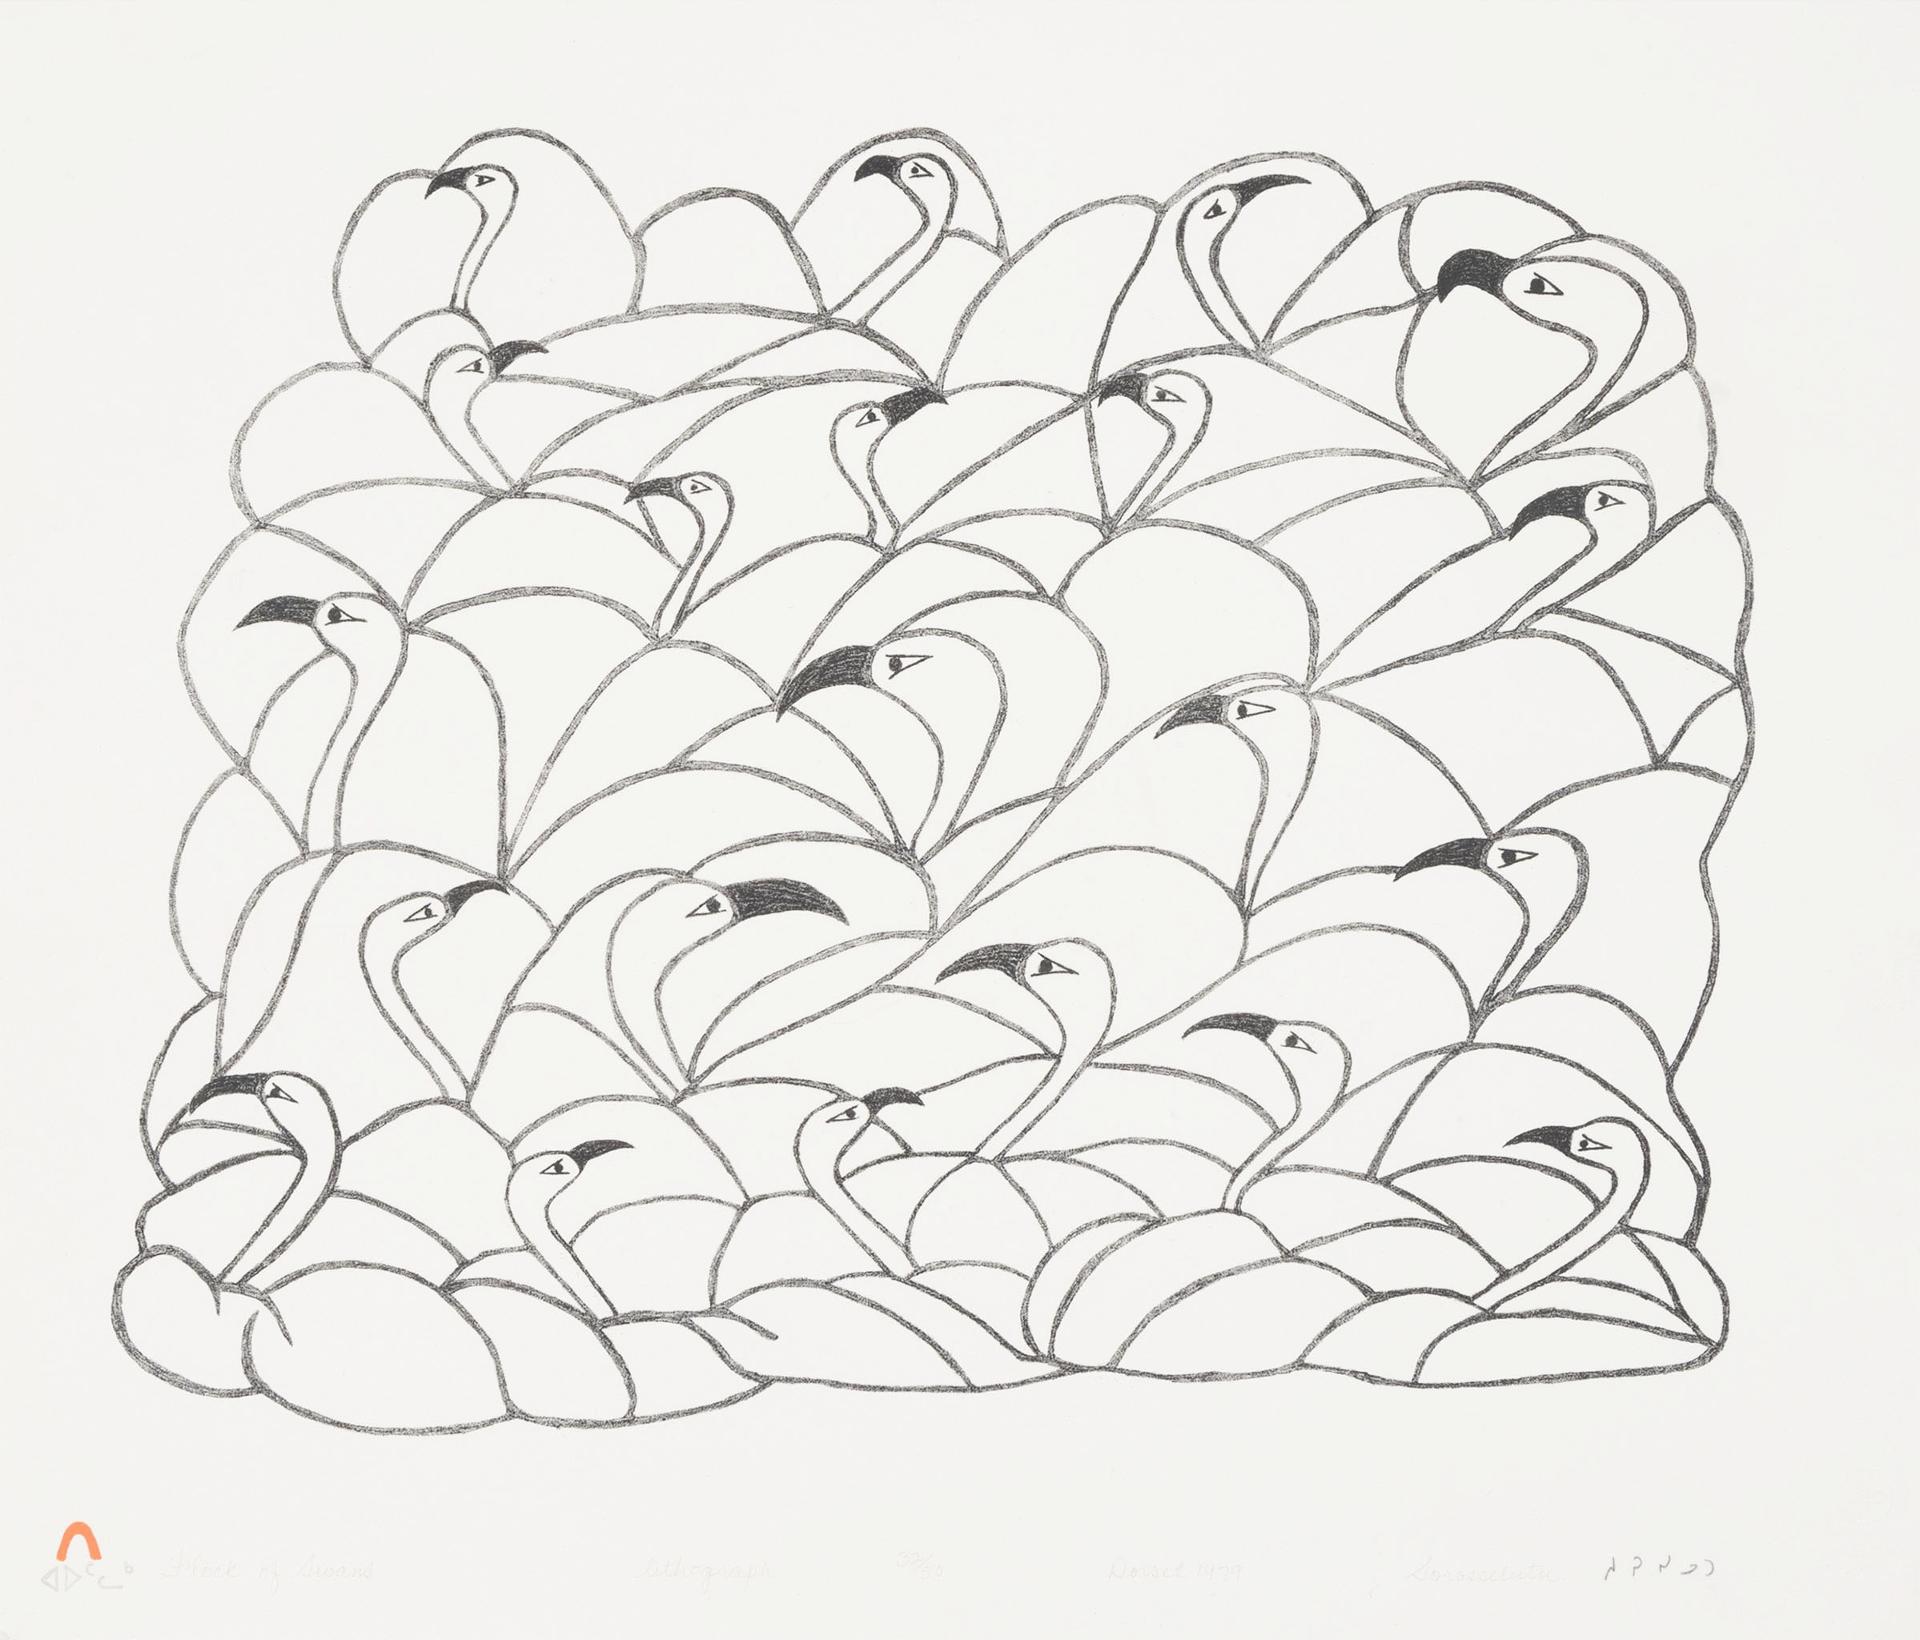 Sorosiluto Ashoona (1941) - Flock Of Swans, 1979